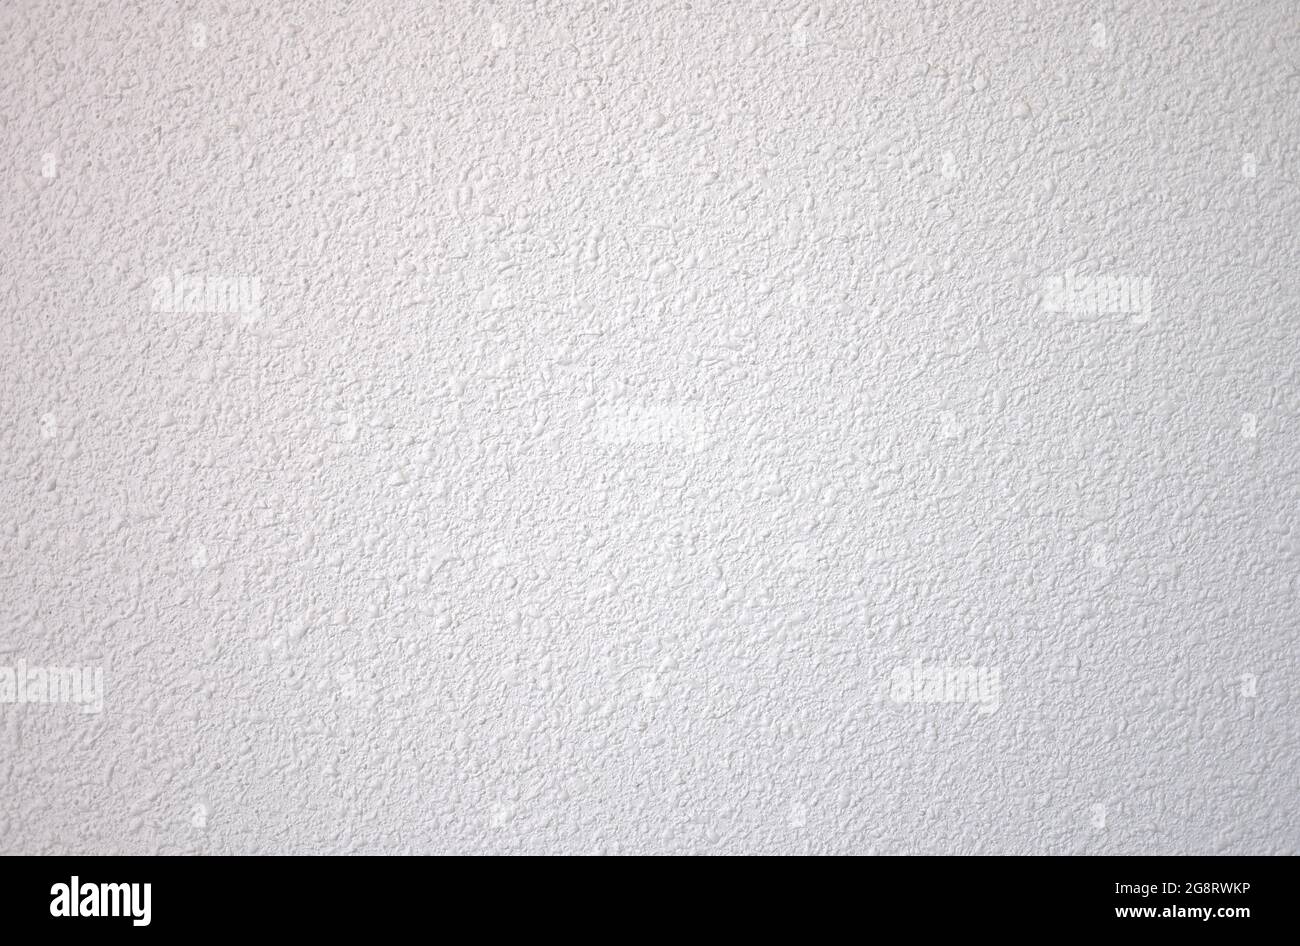 détail d'un mur peint en blanc à l'aide de la technique de gotele Banque D'Images